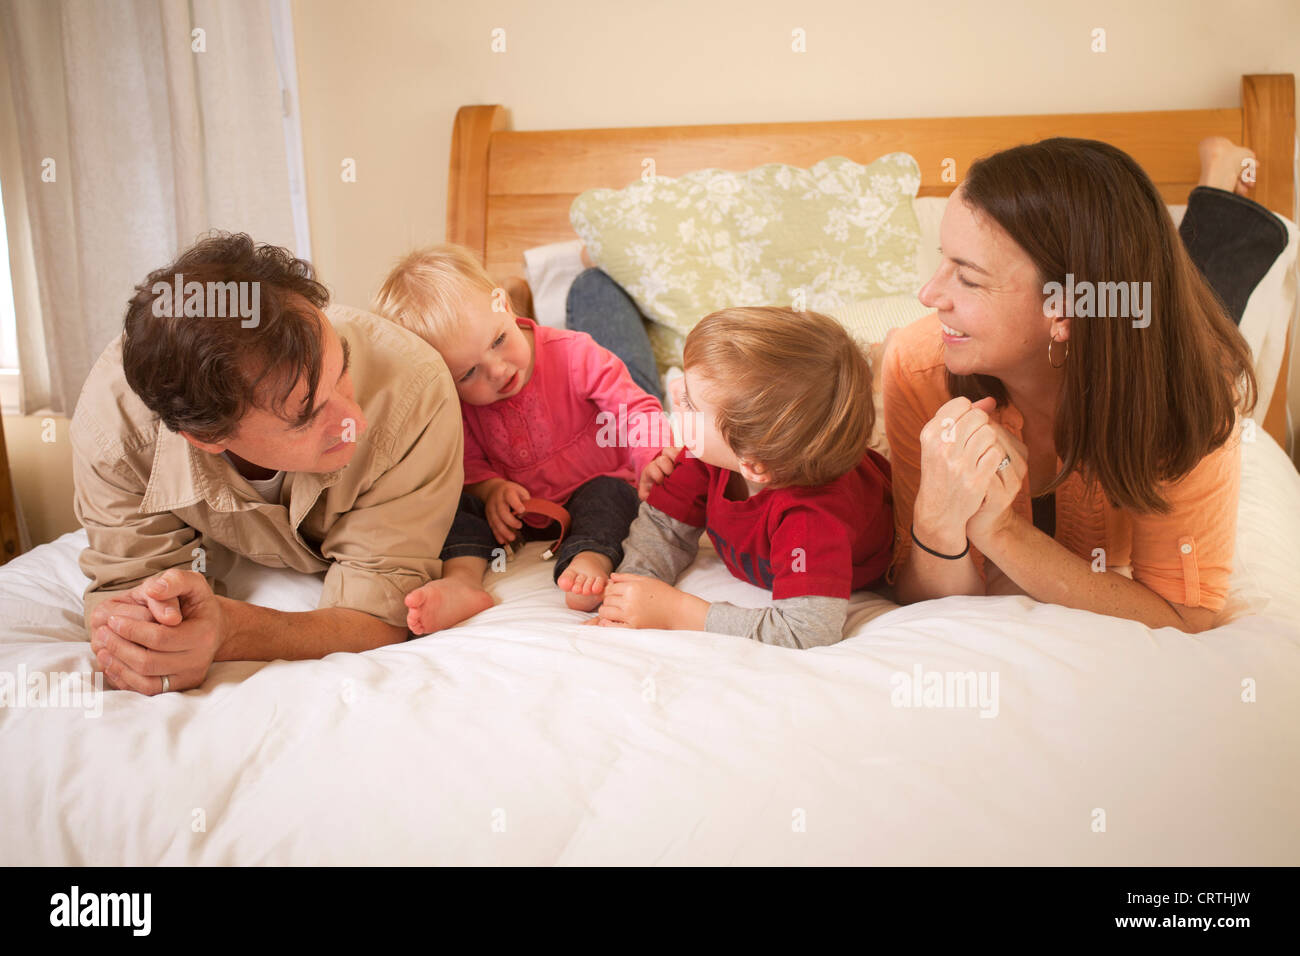 La mère, le père et ses deux enfants sont couchés sur le lit. Banque D'Images